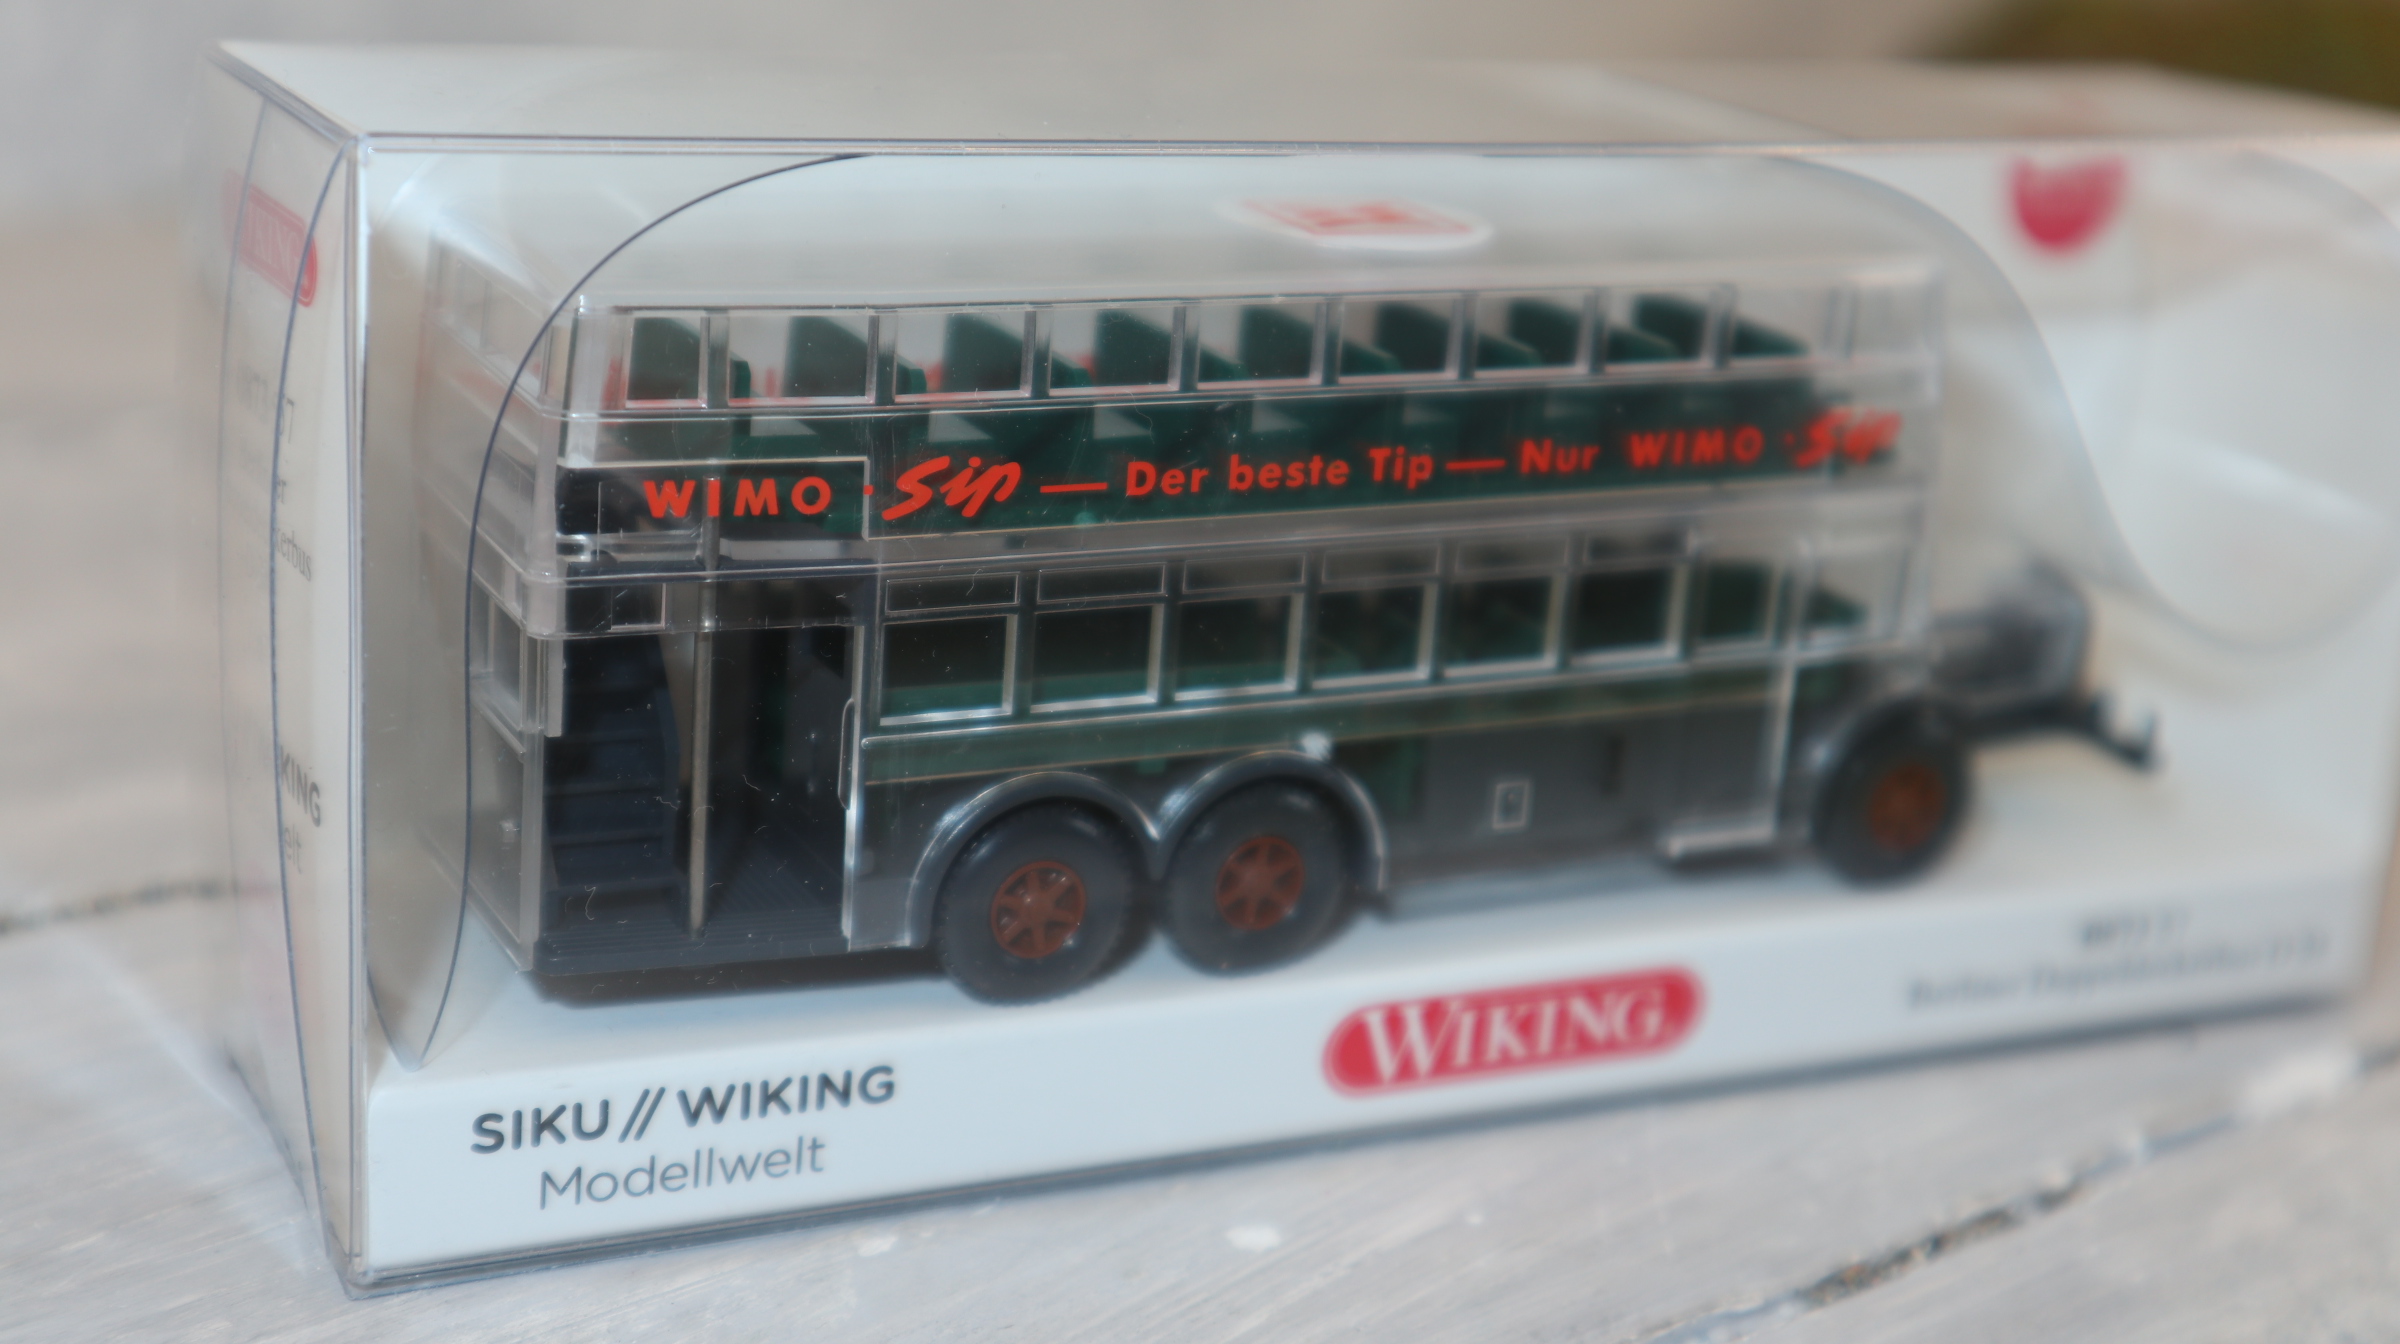 Wiking 087357 in 1:87 Berliner Doppeldeckerbus durchsichtig, WIKING Modellwelt, Neu in OVP